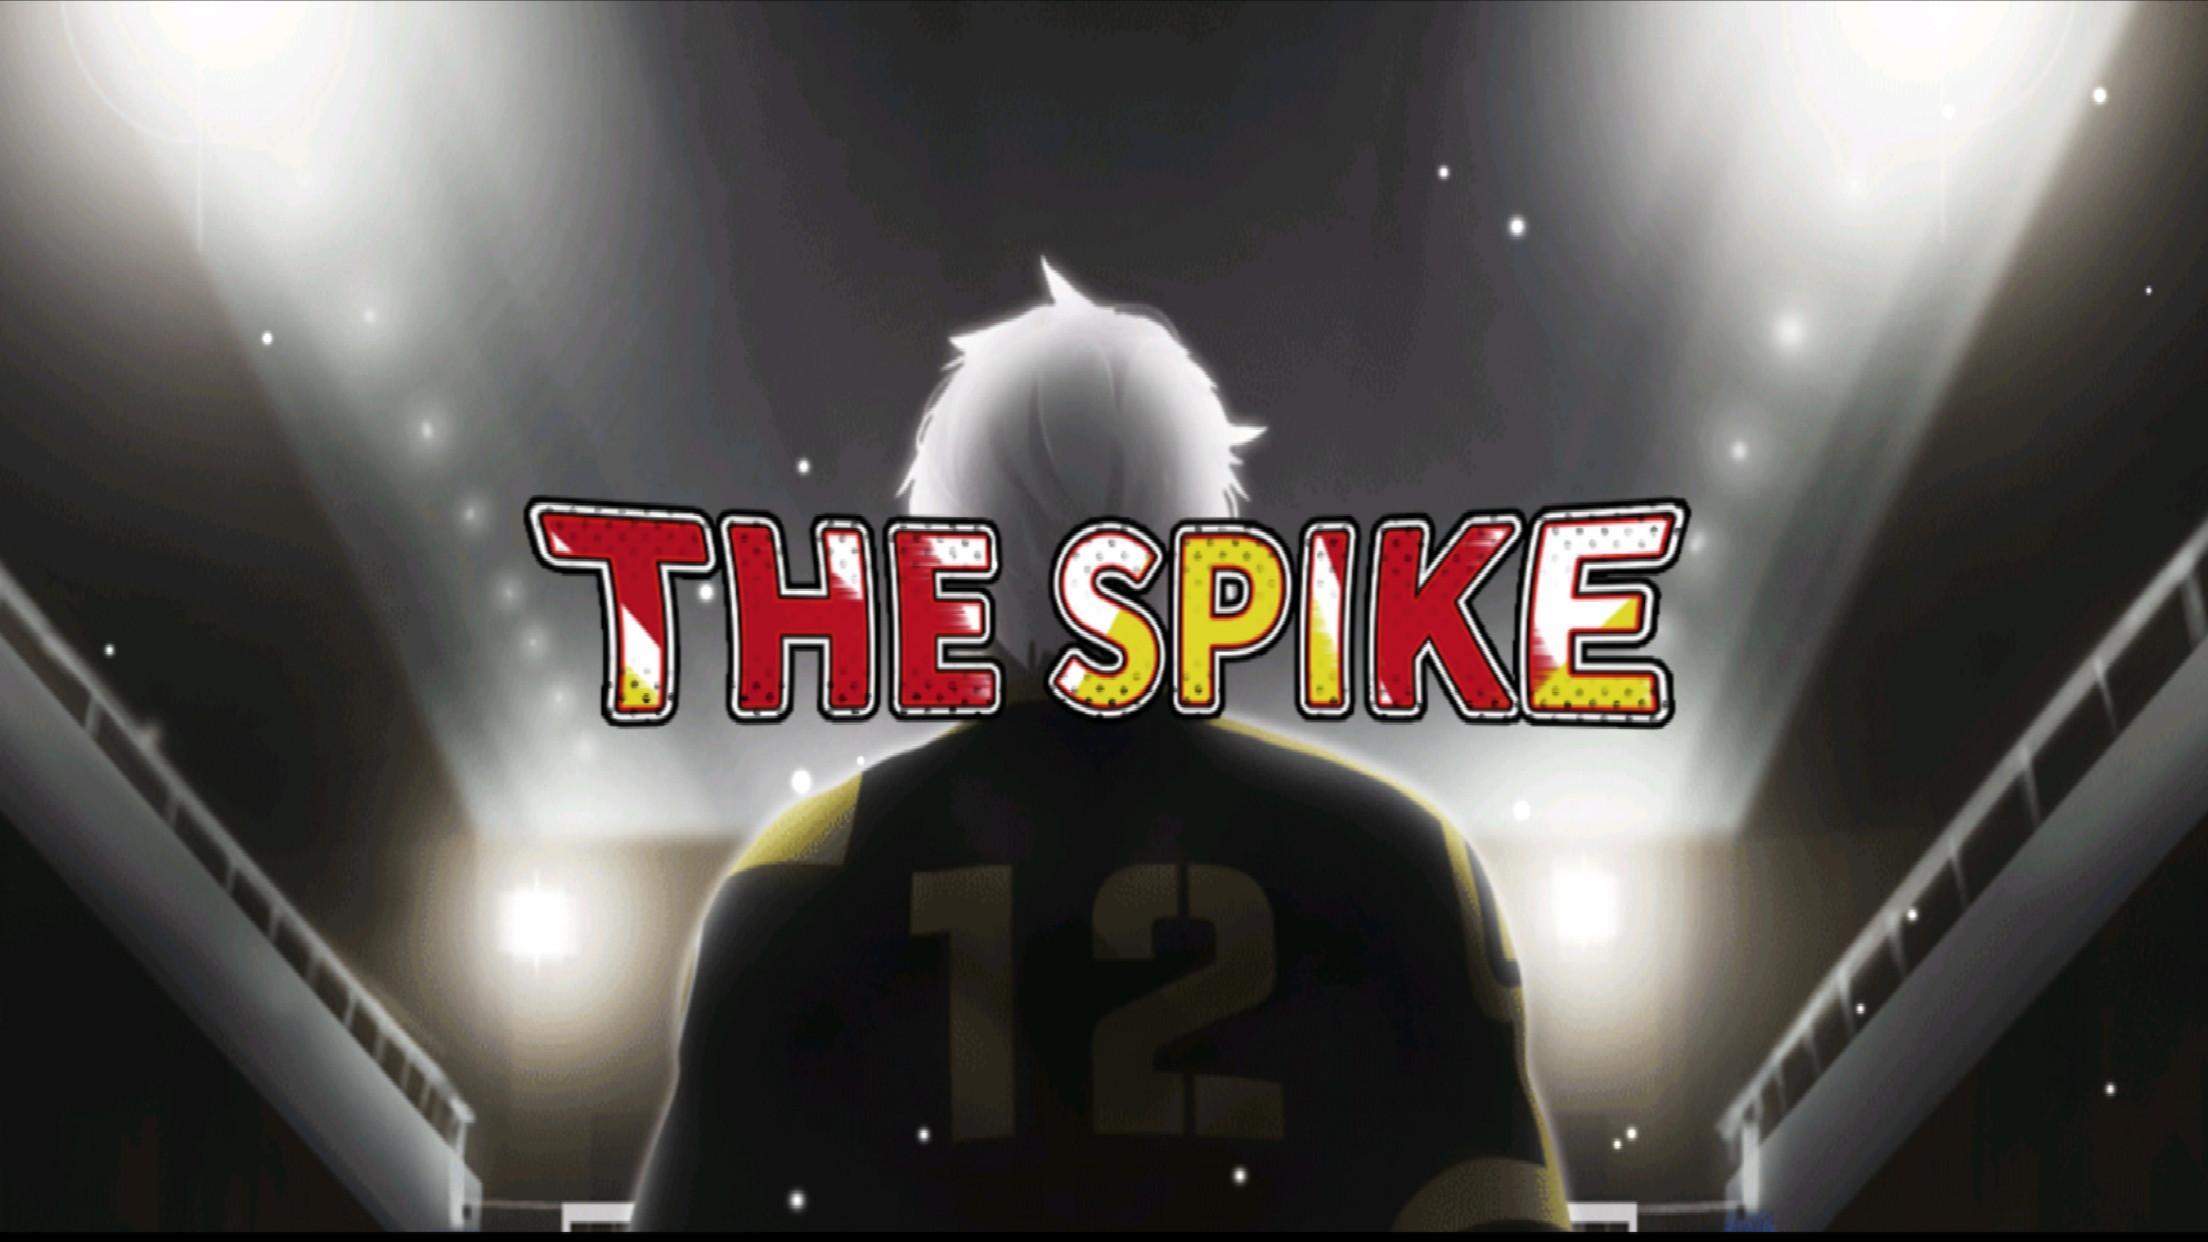 Промокоды зе спайке. The Spike Volleyball игра. The Spike Volleyball story. Spike в волейболе. Спайк игра волейбол.